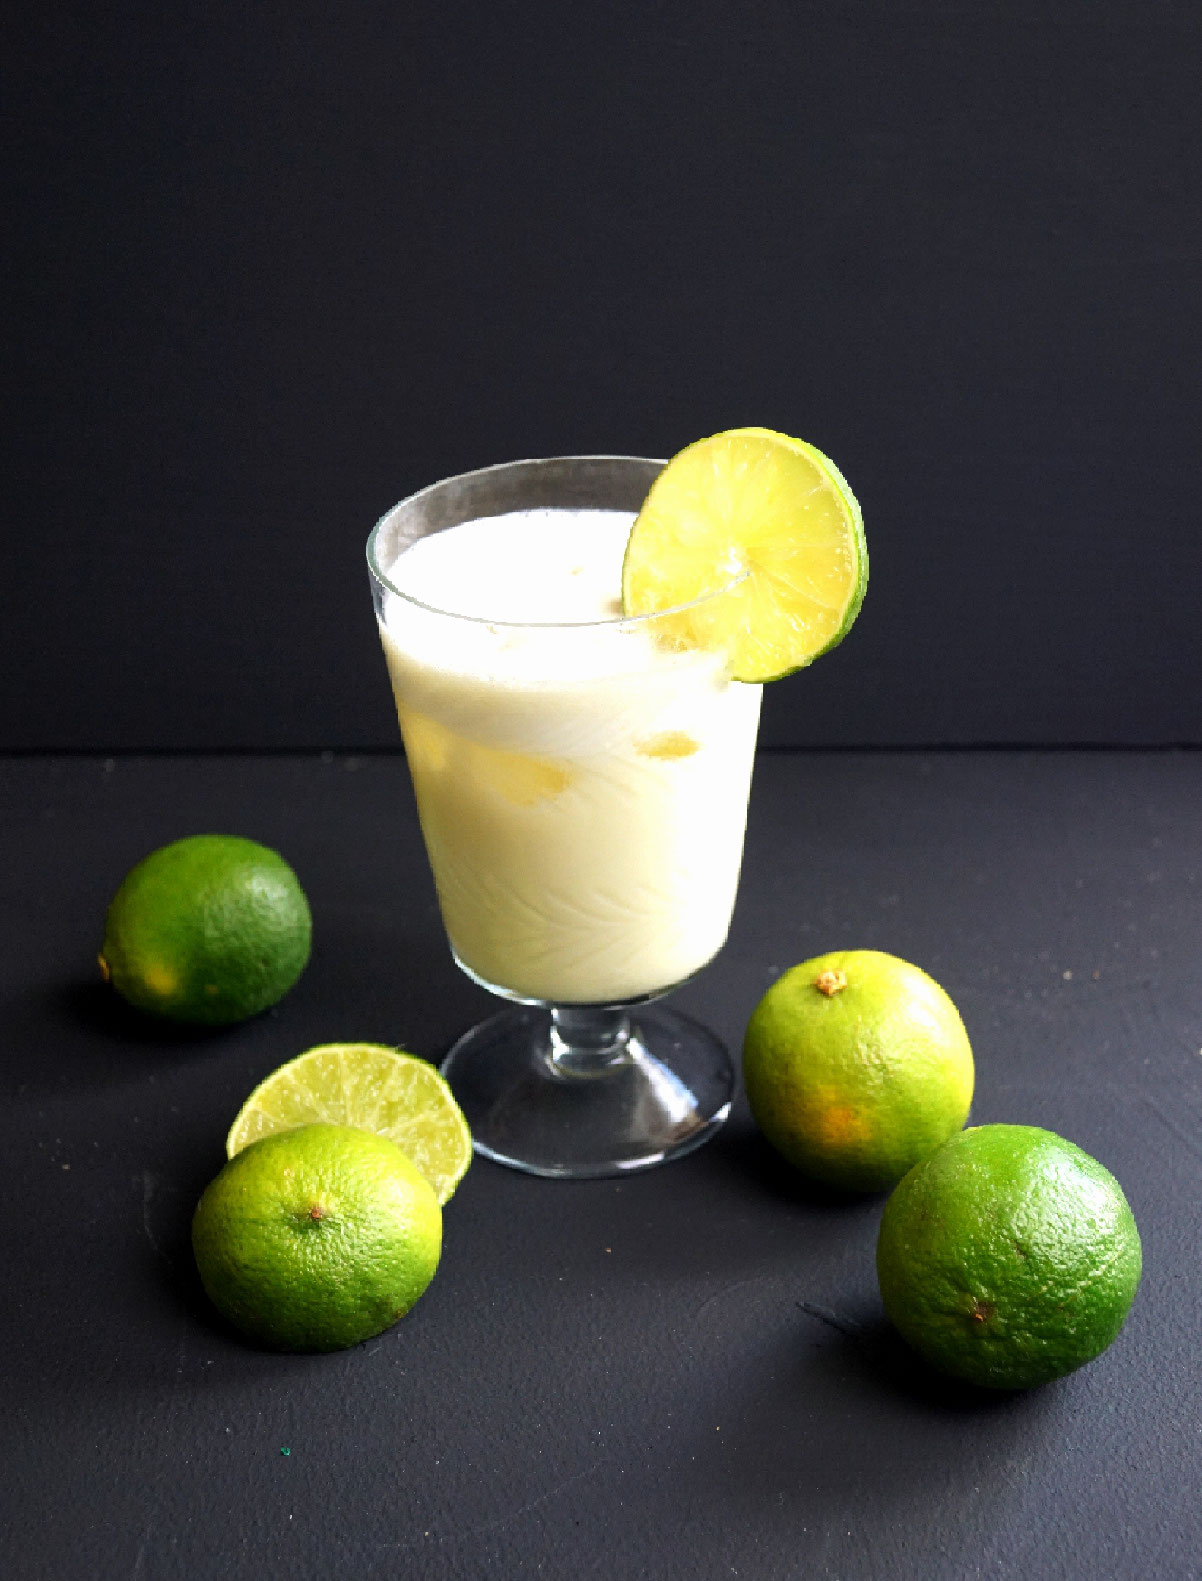 Brasilianische Limonade — Rezepte Suchen